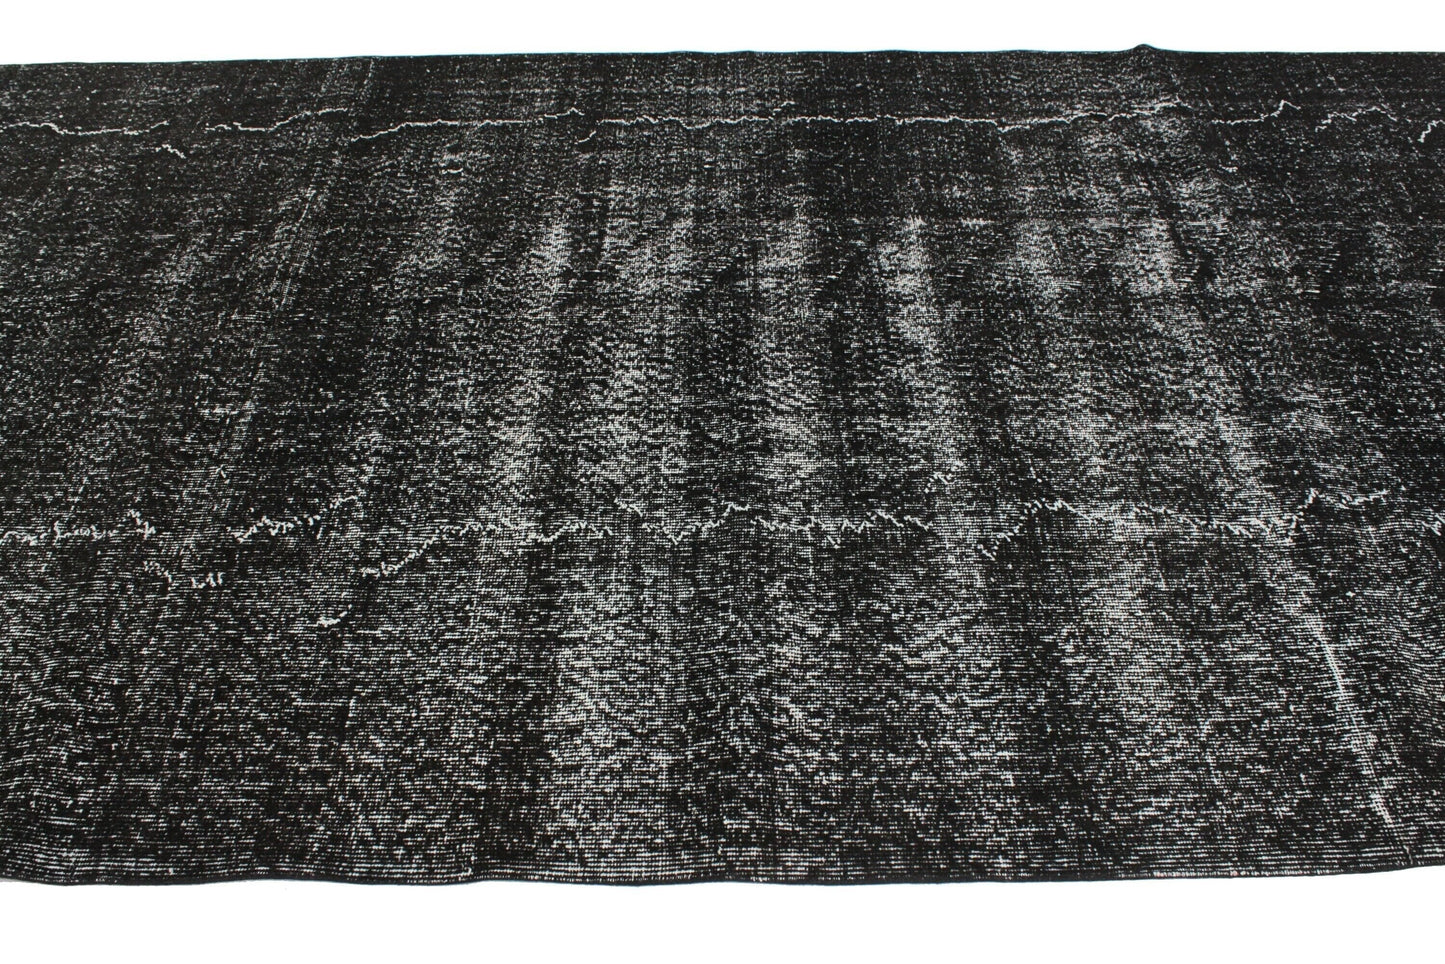 Turkish Vintage Rug, 6x9 Overdye Black Rug, Area Rug, Living Room Rug, Carpet Rug, 3159